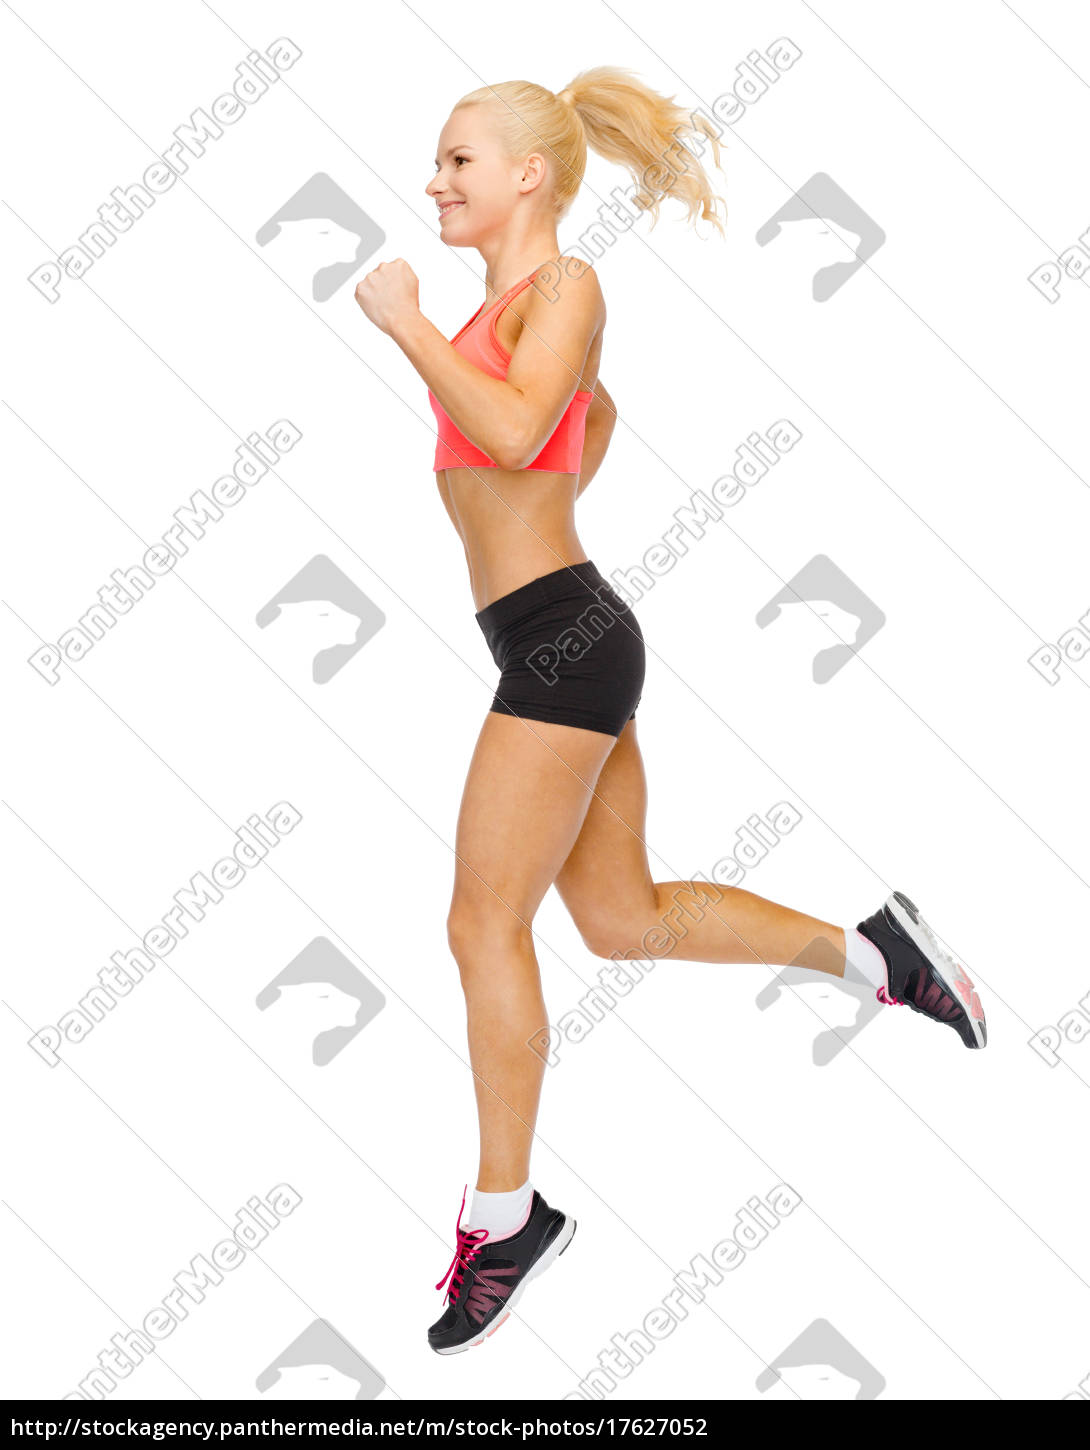 sportliche frau laufen oder springen - Lizenzfreies Bild #17627052